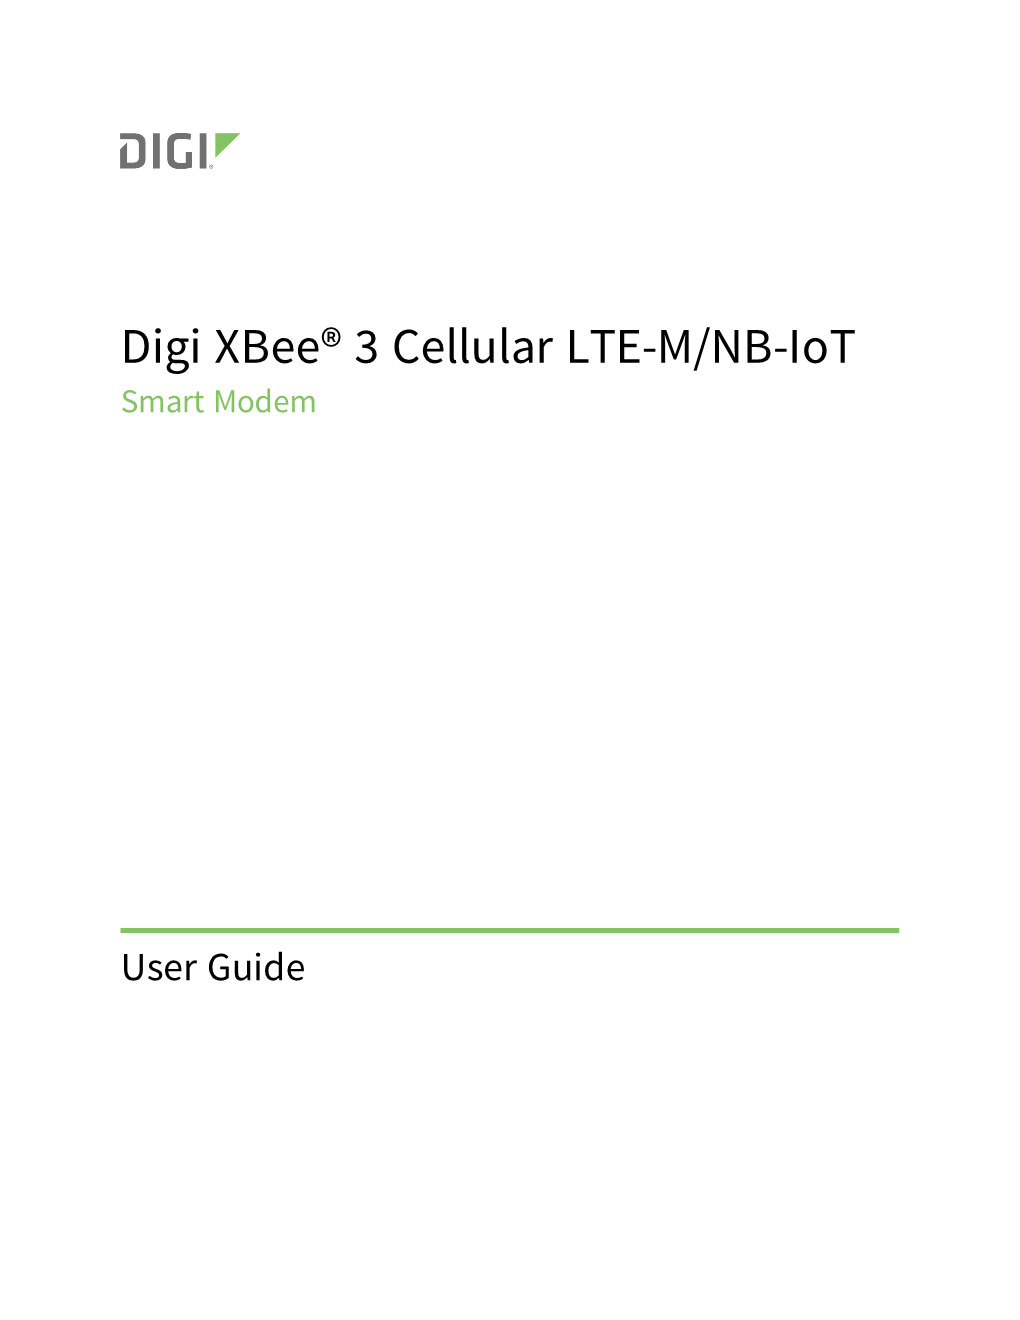 Digi Xbee® 3 Cellular LTE-M/NB-Iot Global Smart Modem User Guide 2